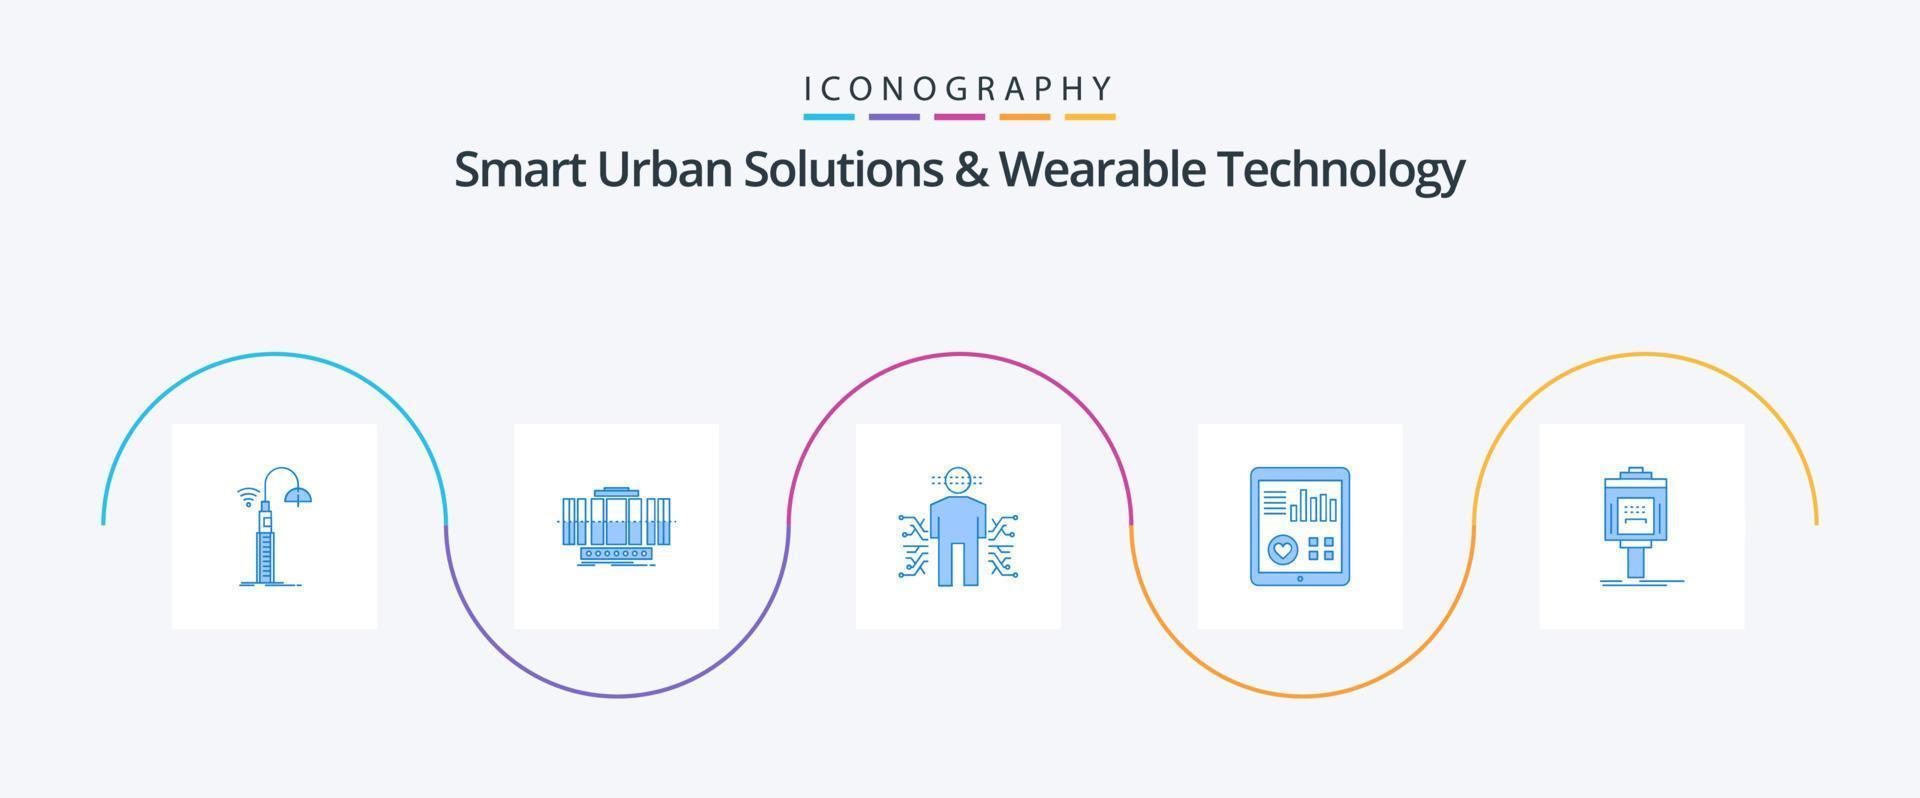 soluciones urbanas inteligentes y paquete de iconos azul 5 de tecnología portátil que incluye el corazón. supervisión. viento. ciencia. datos vector